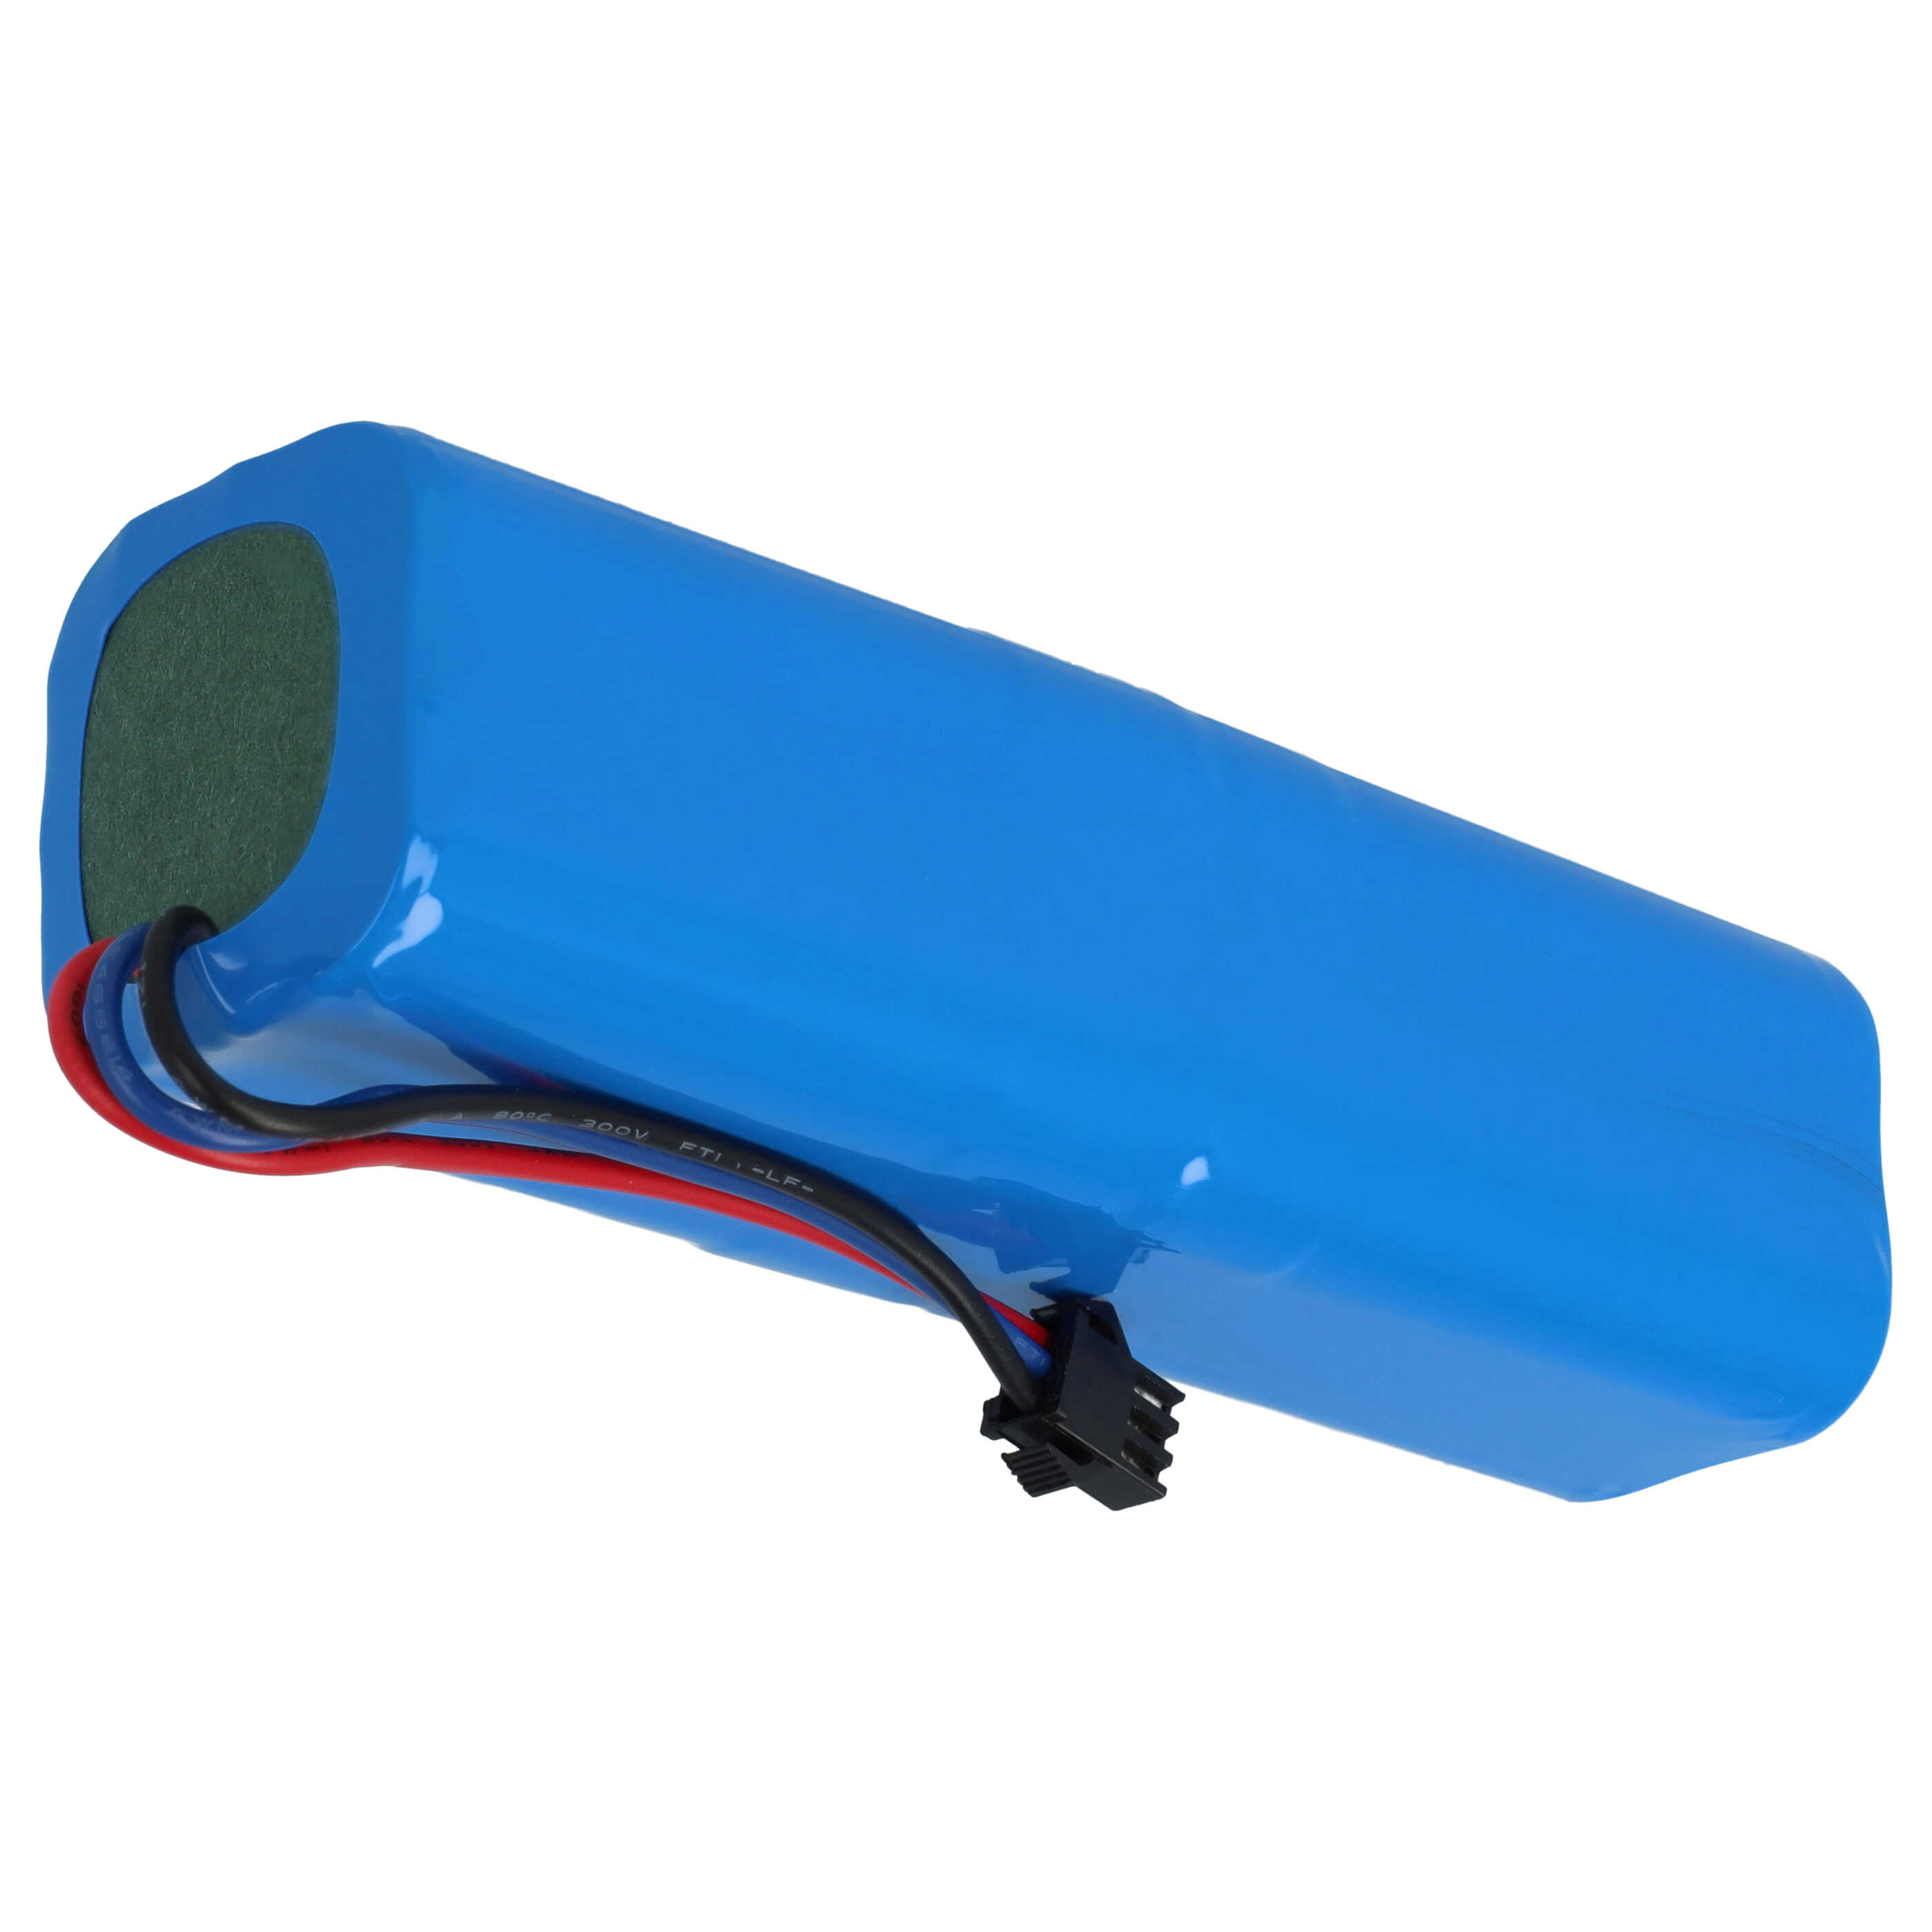 Batería reemplaza Blaupunkt 6.60.40.01-0 para aspiradora Blaupunkt - 5200 mAh 14,4 V Li-Ion